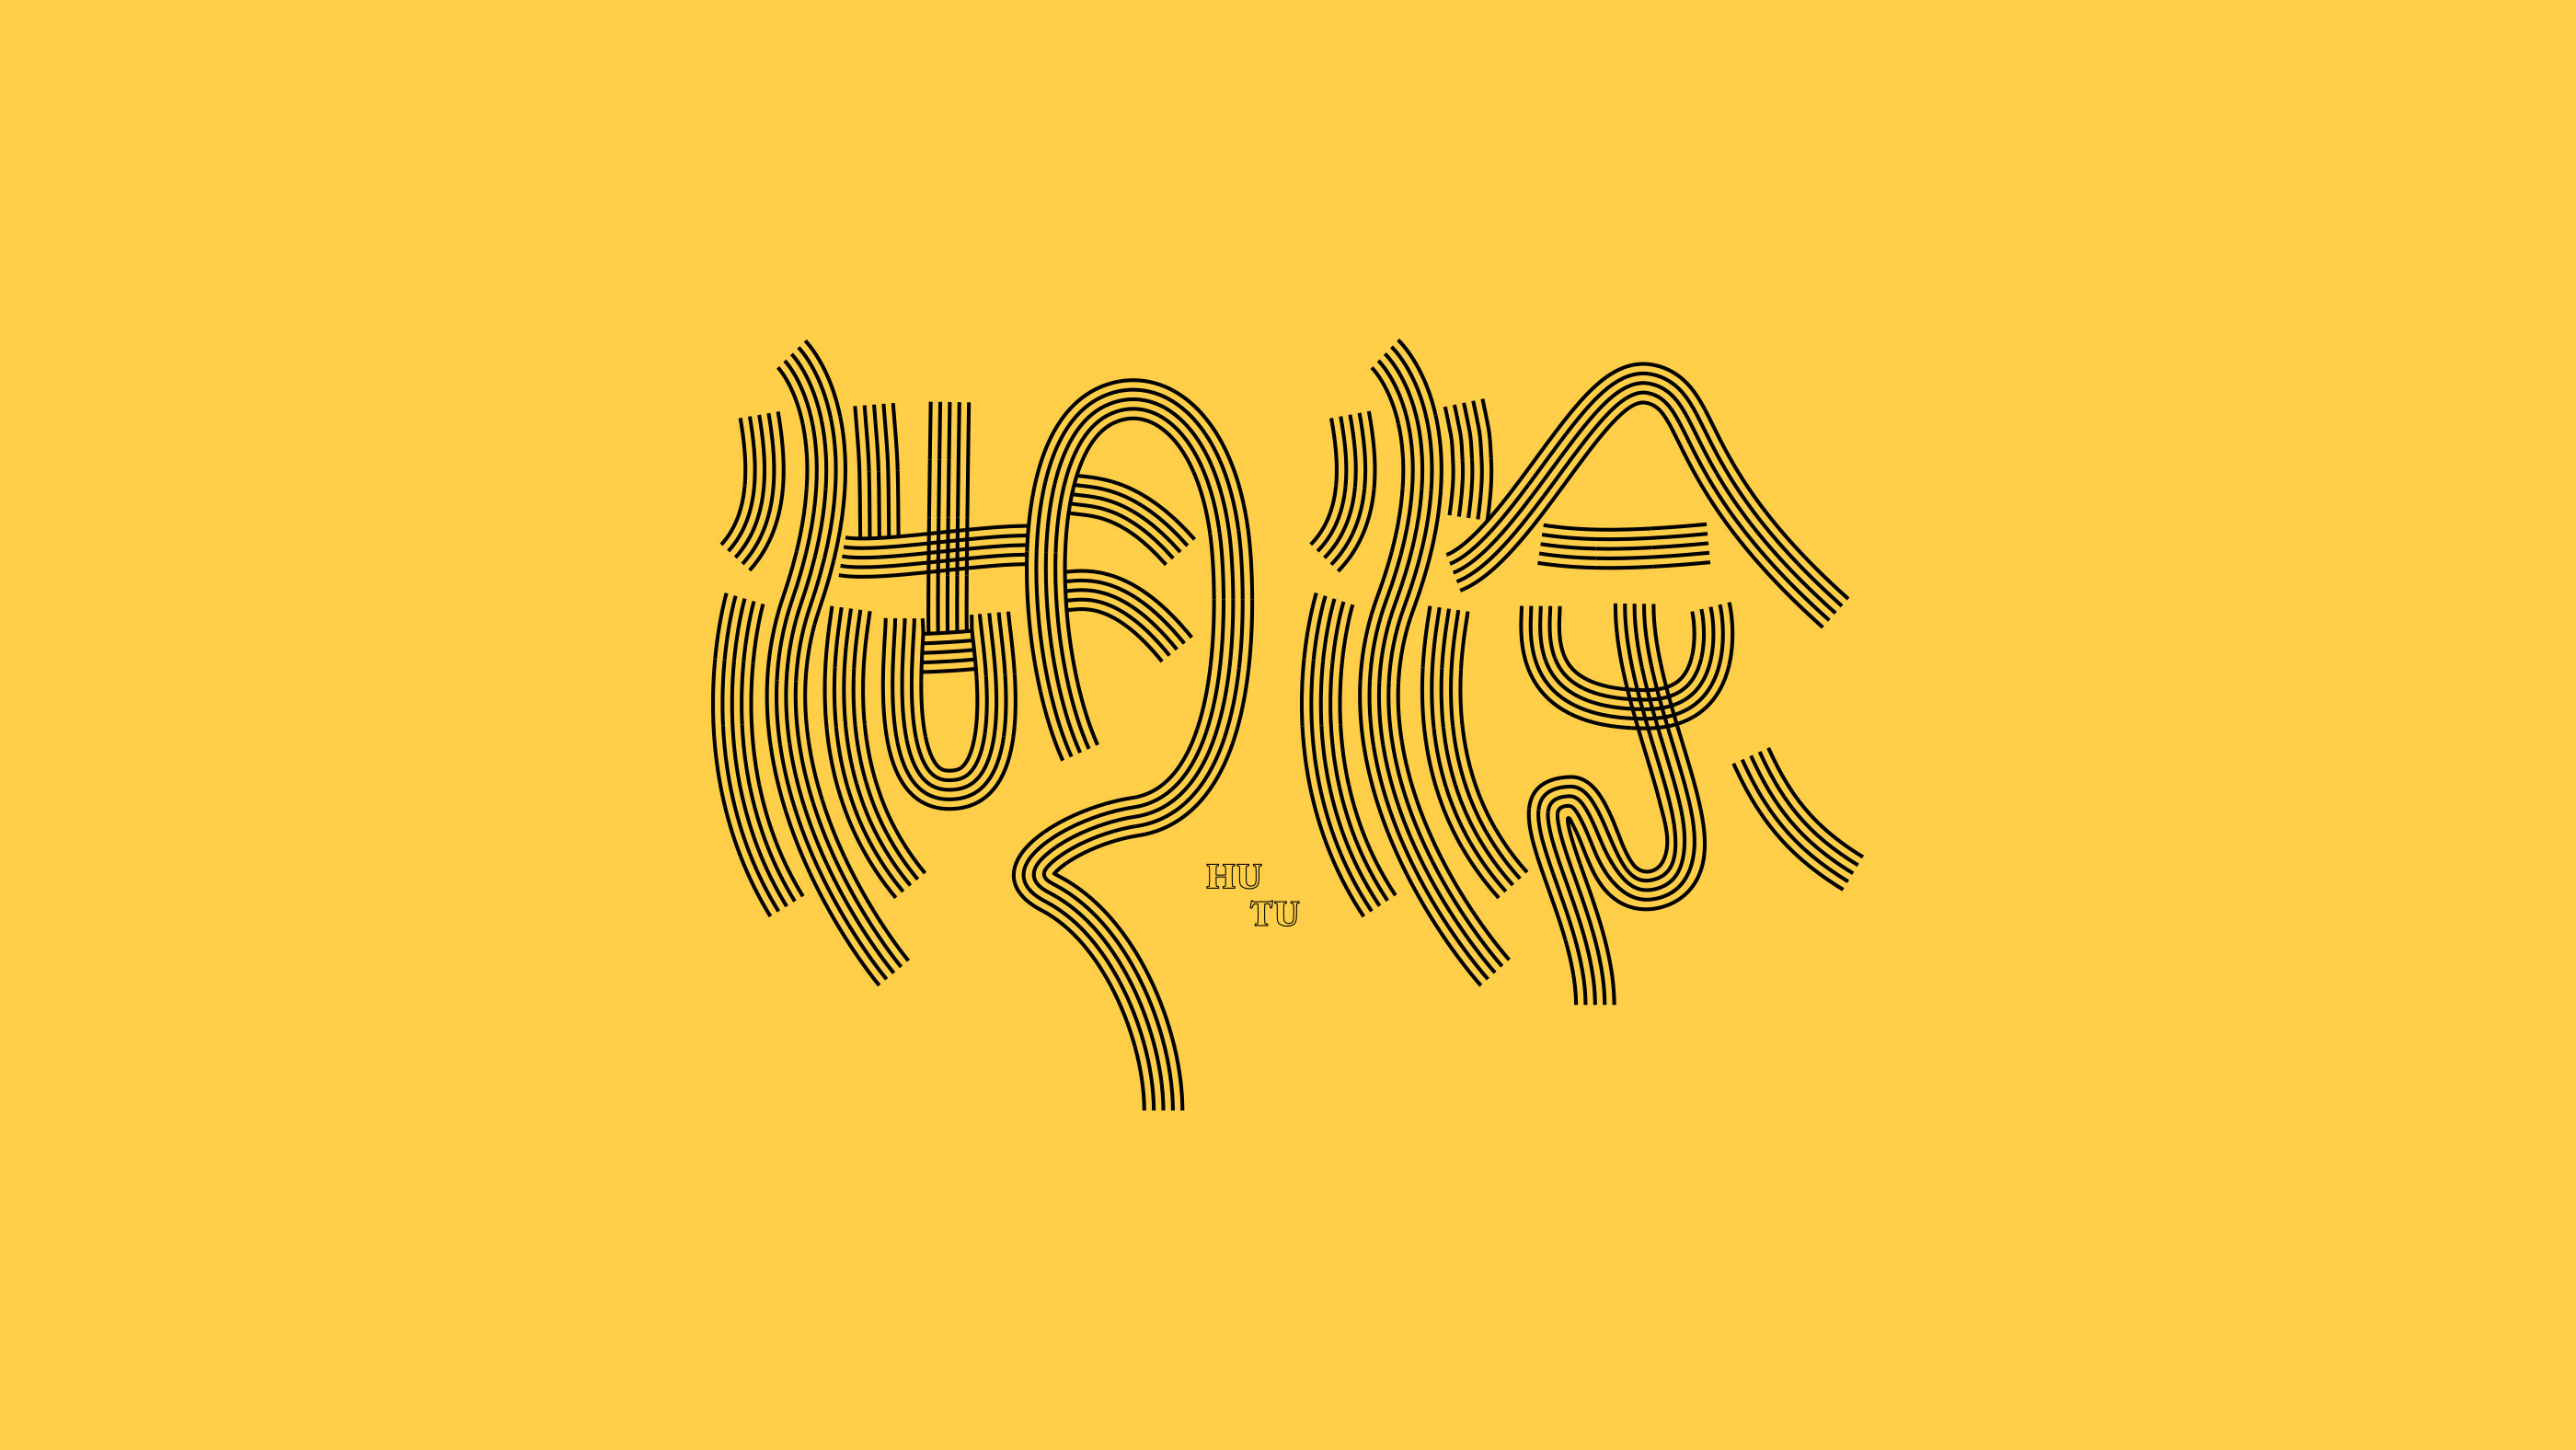 中文字体设计欣赏!千变万化!独树一帜!